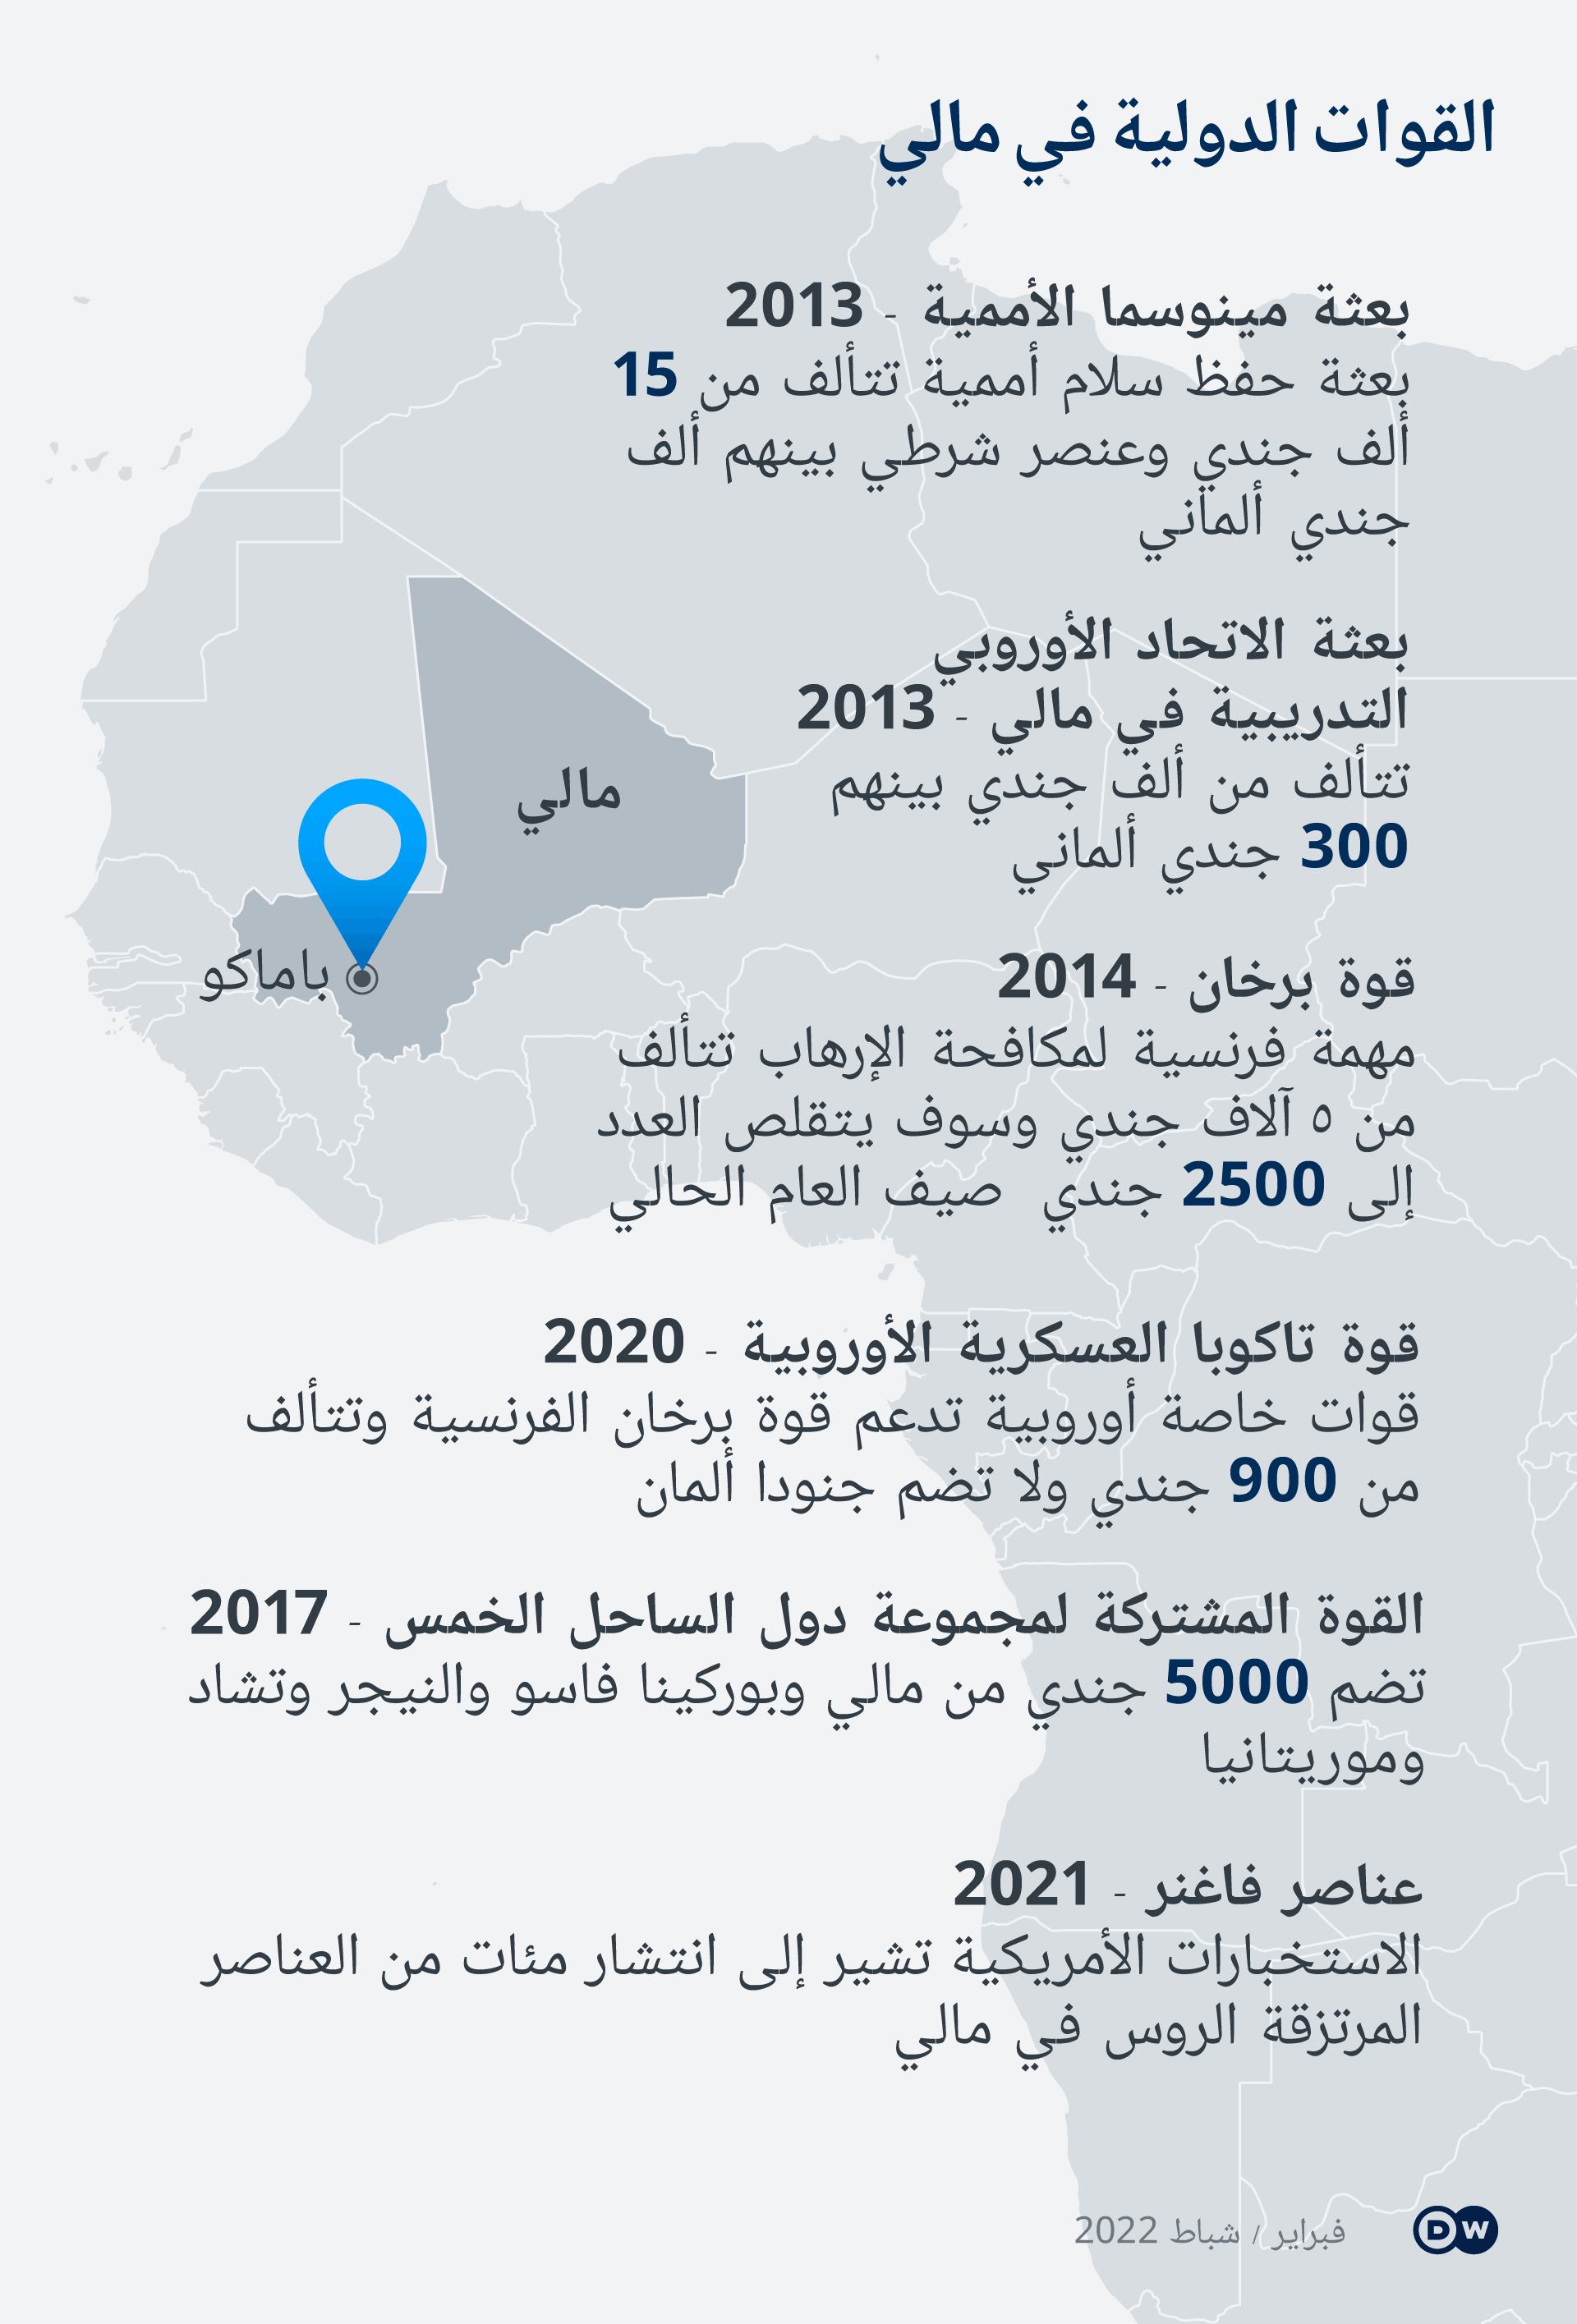 غرافيك يوضح تاريخ انتشار القوات الدولية في مالي